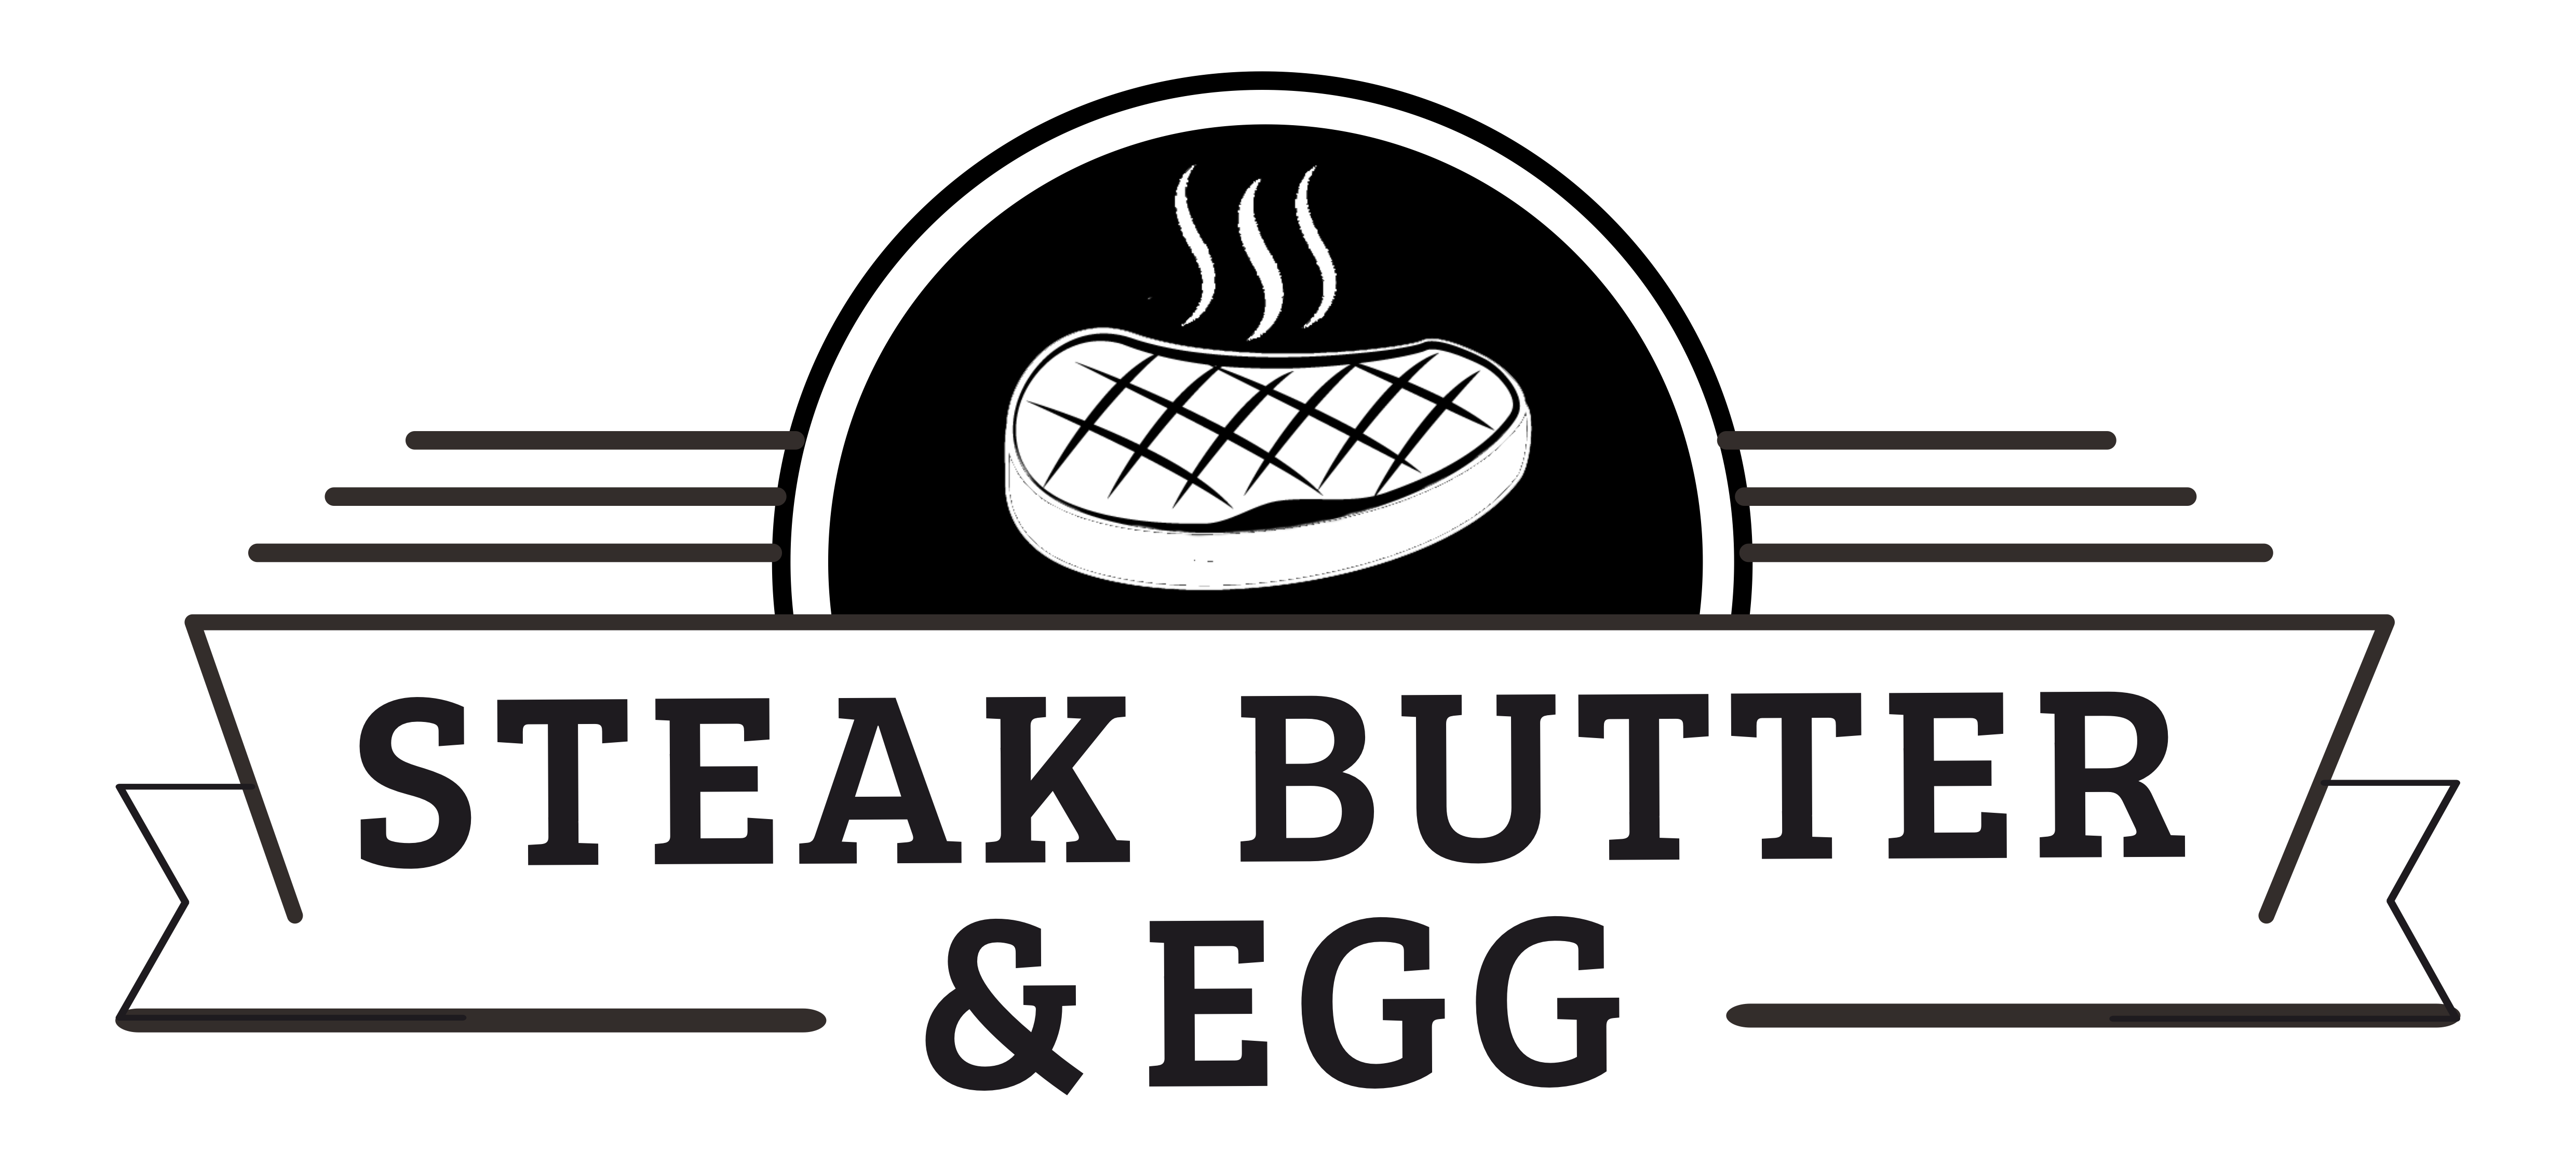 Steak Butter & Egg